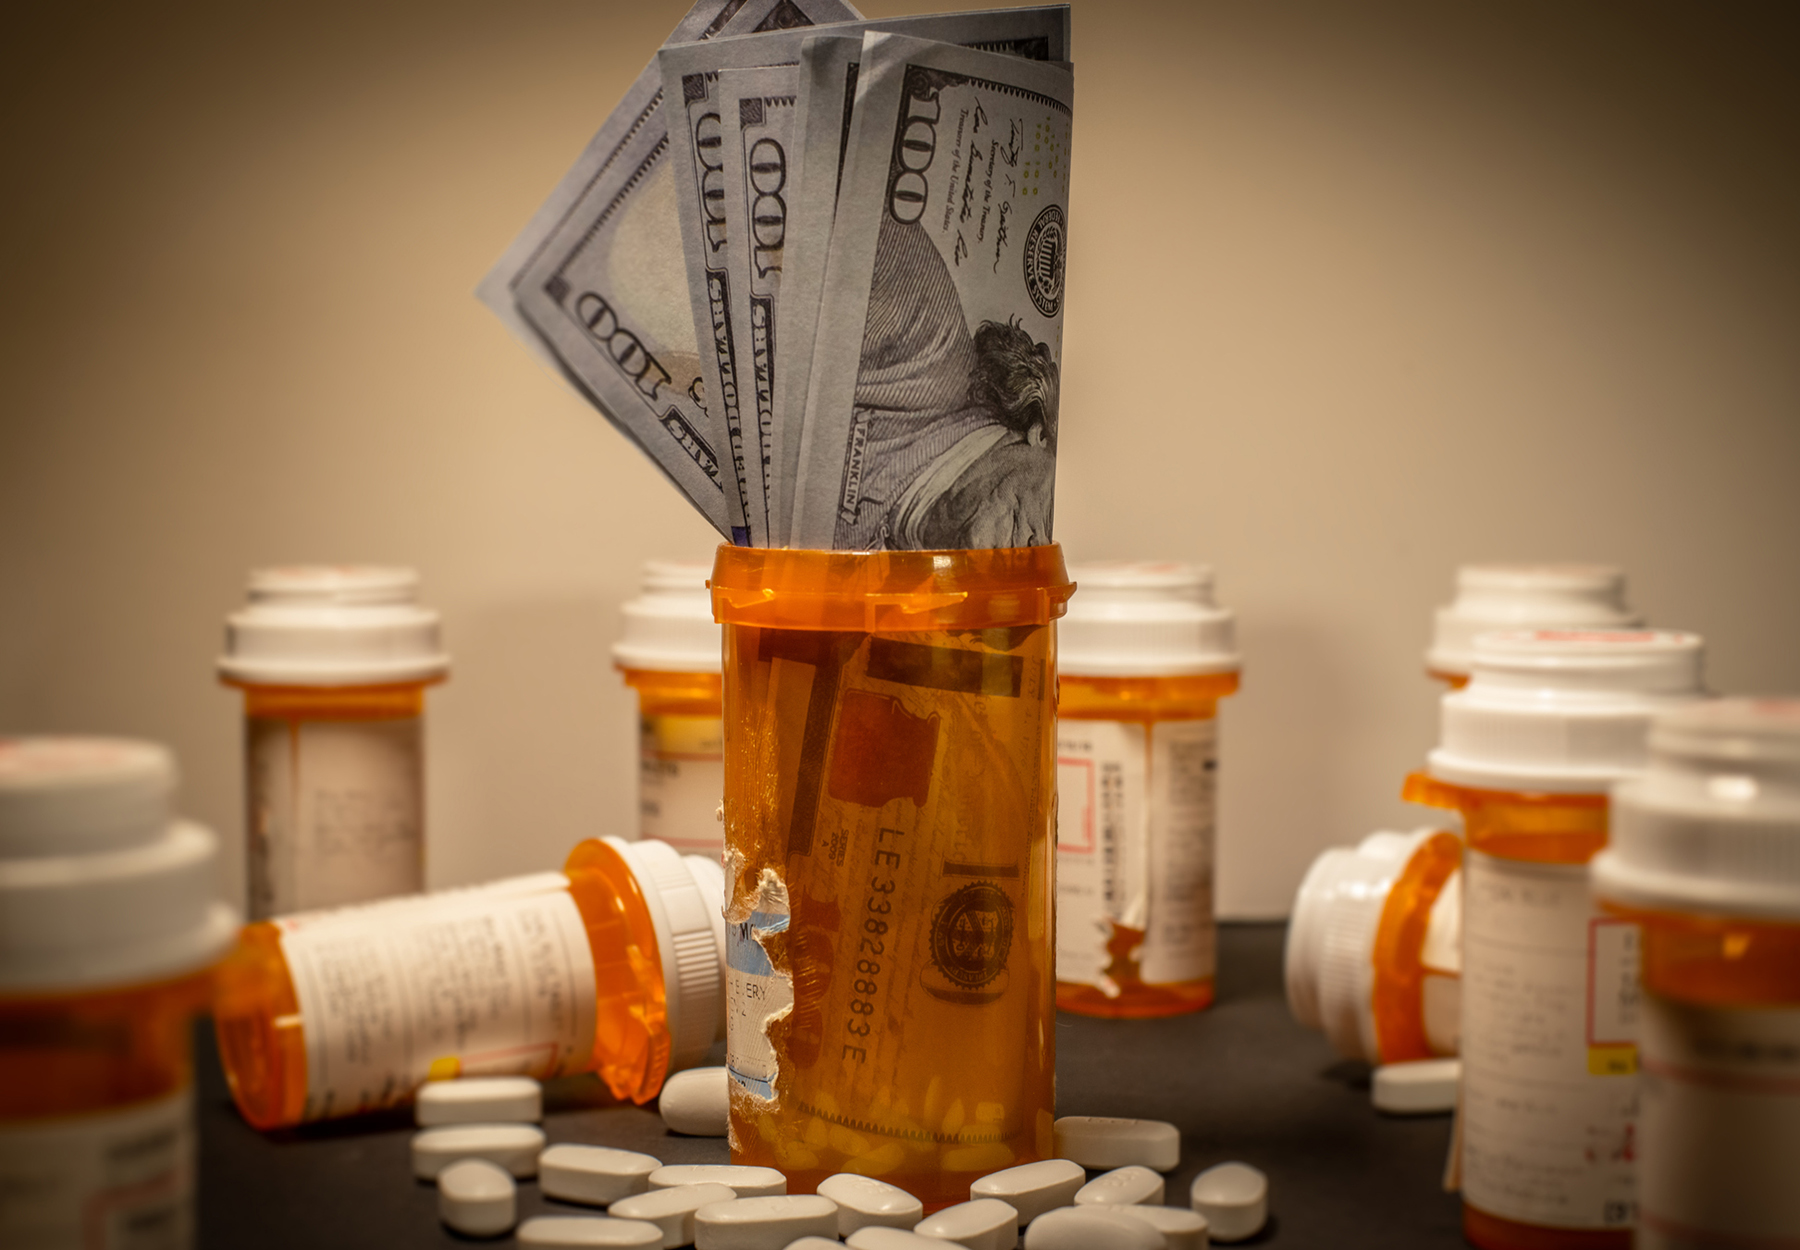 American $100 bills are stuffed into a prescription drug container. Stock photo.